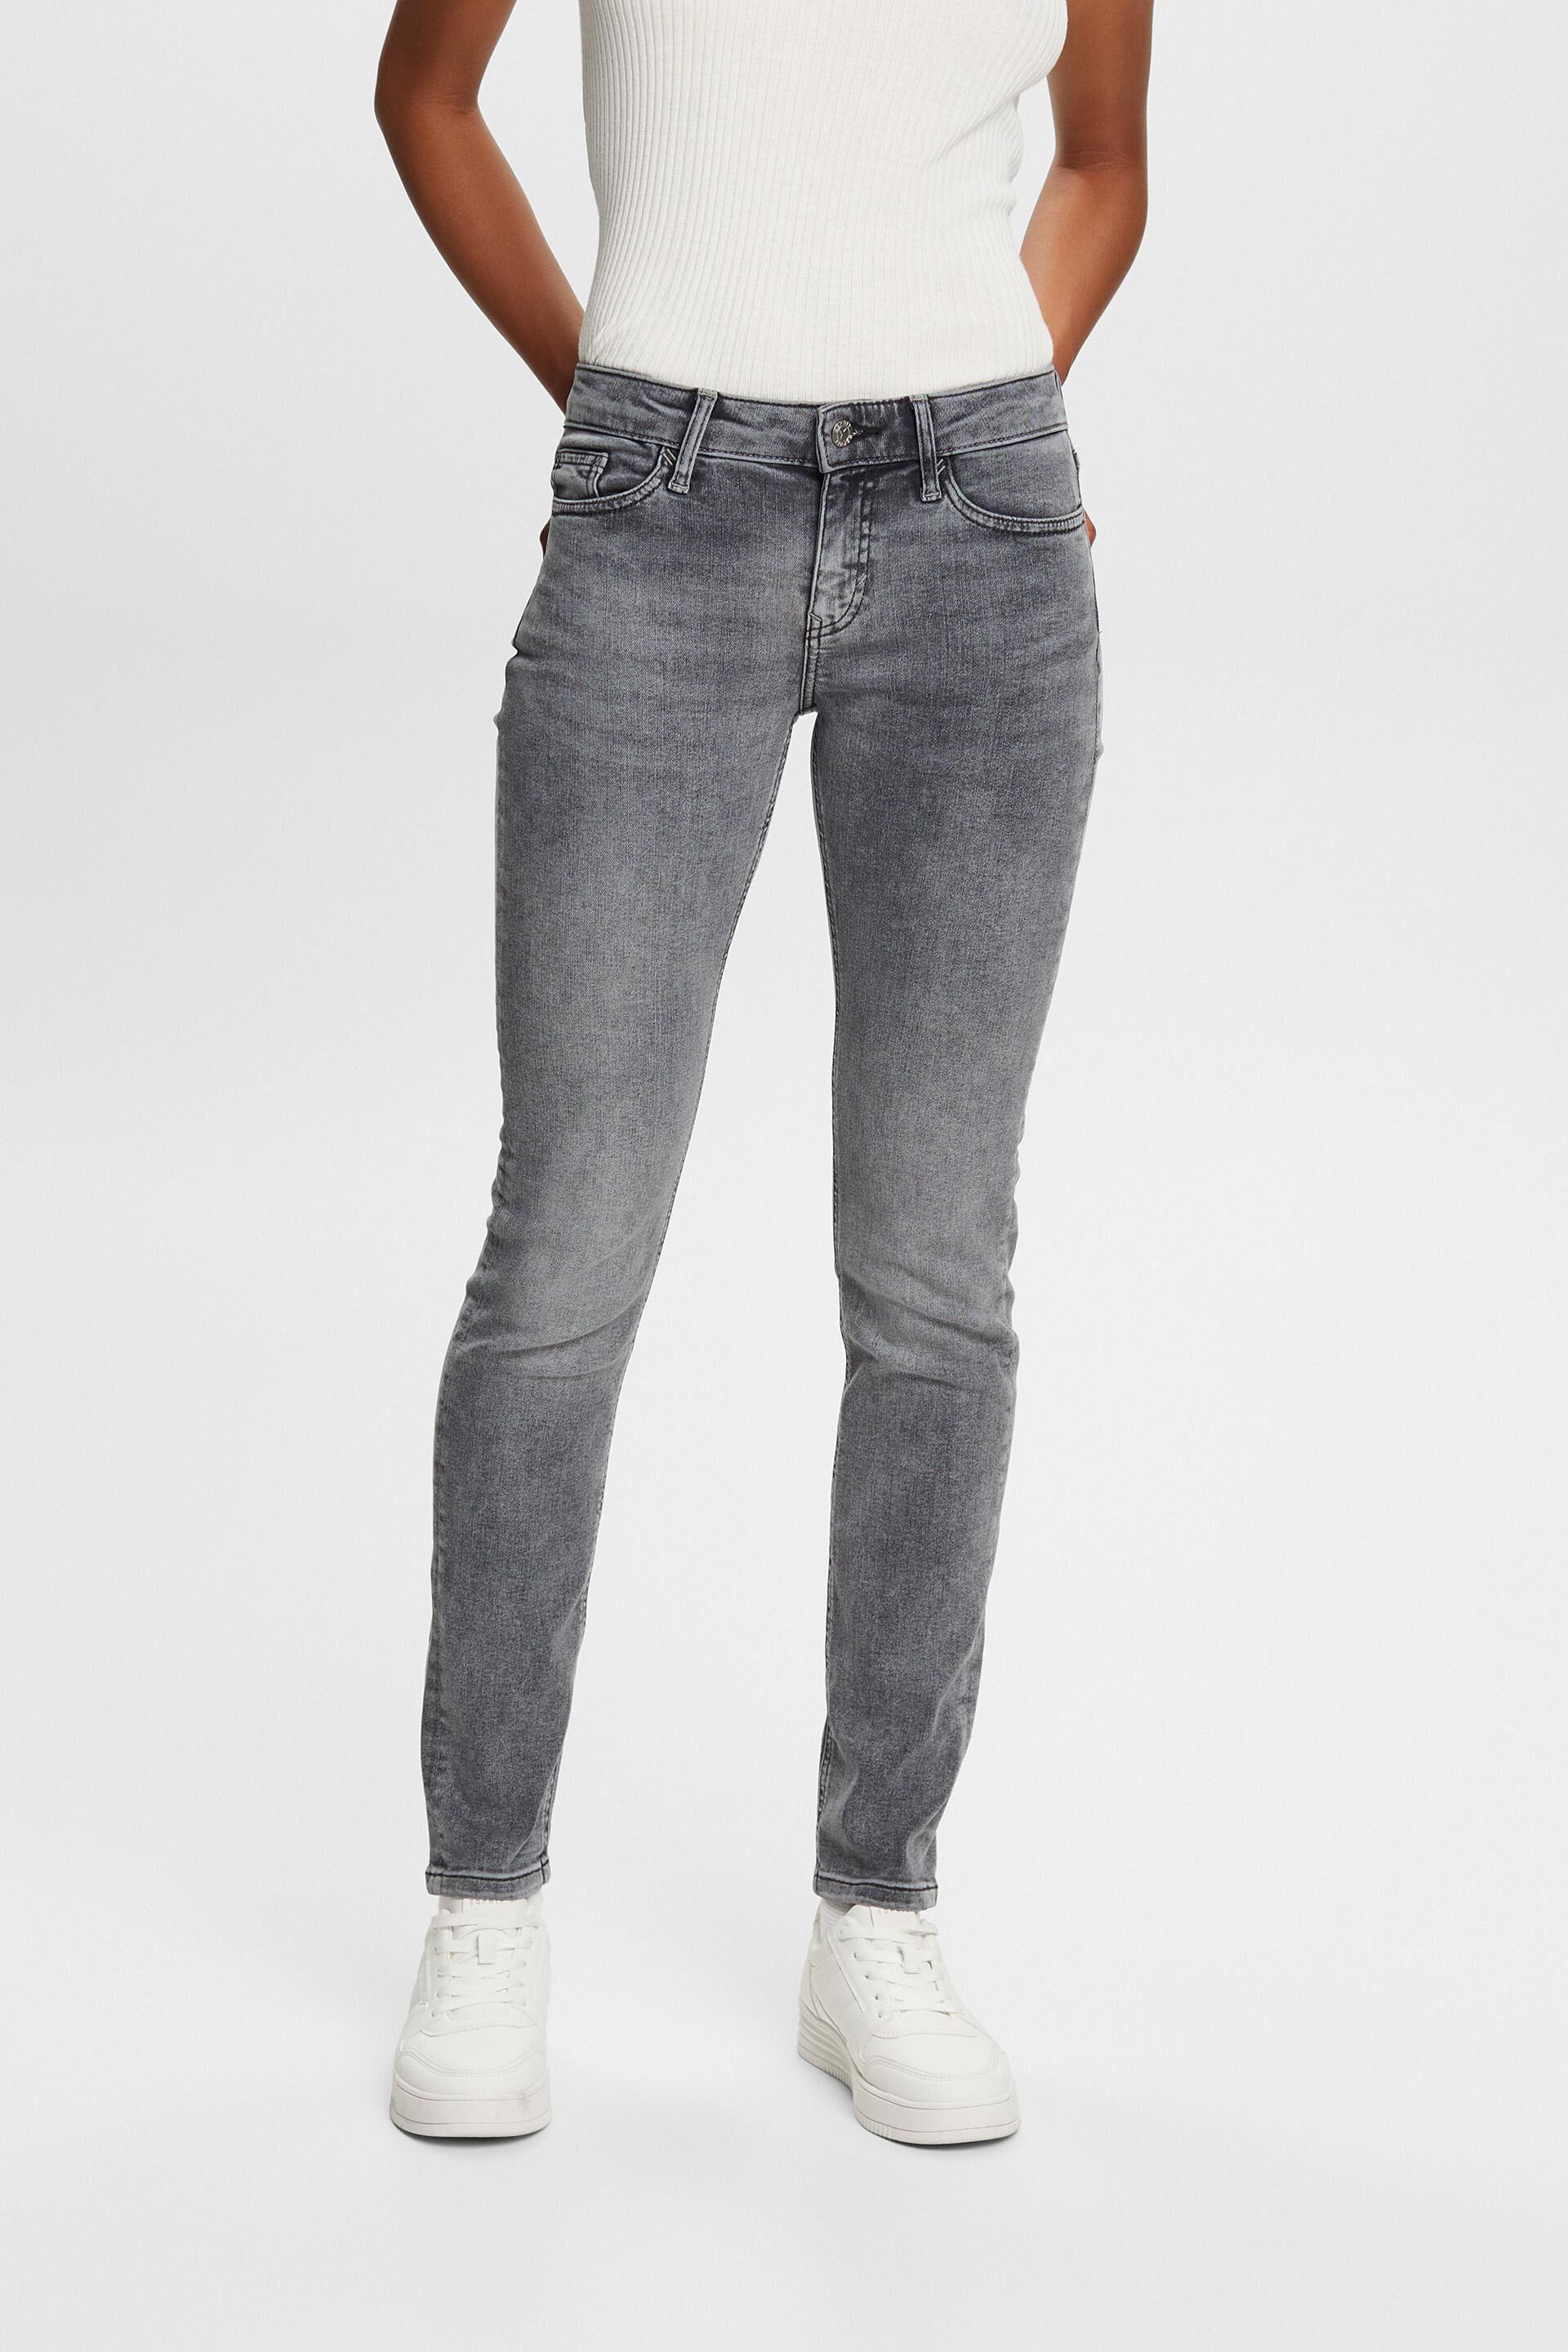 Esprit Jeans Slim Mid-Rise